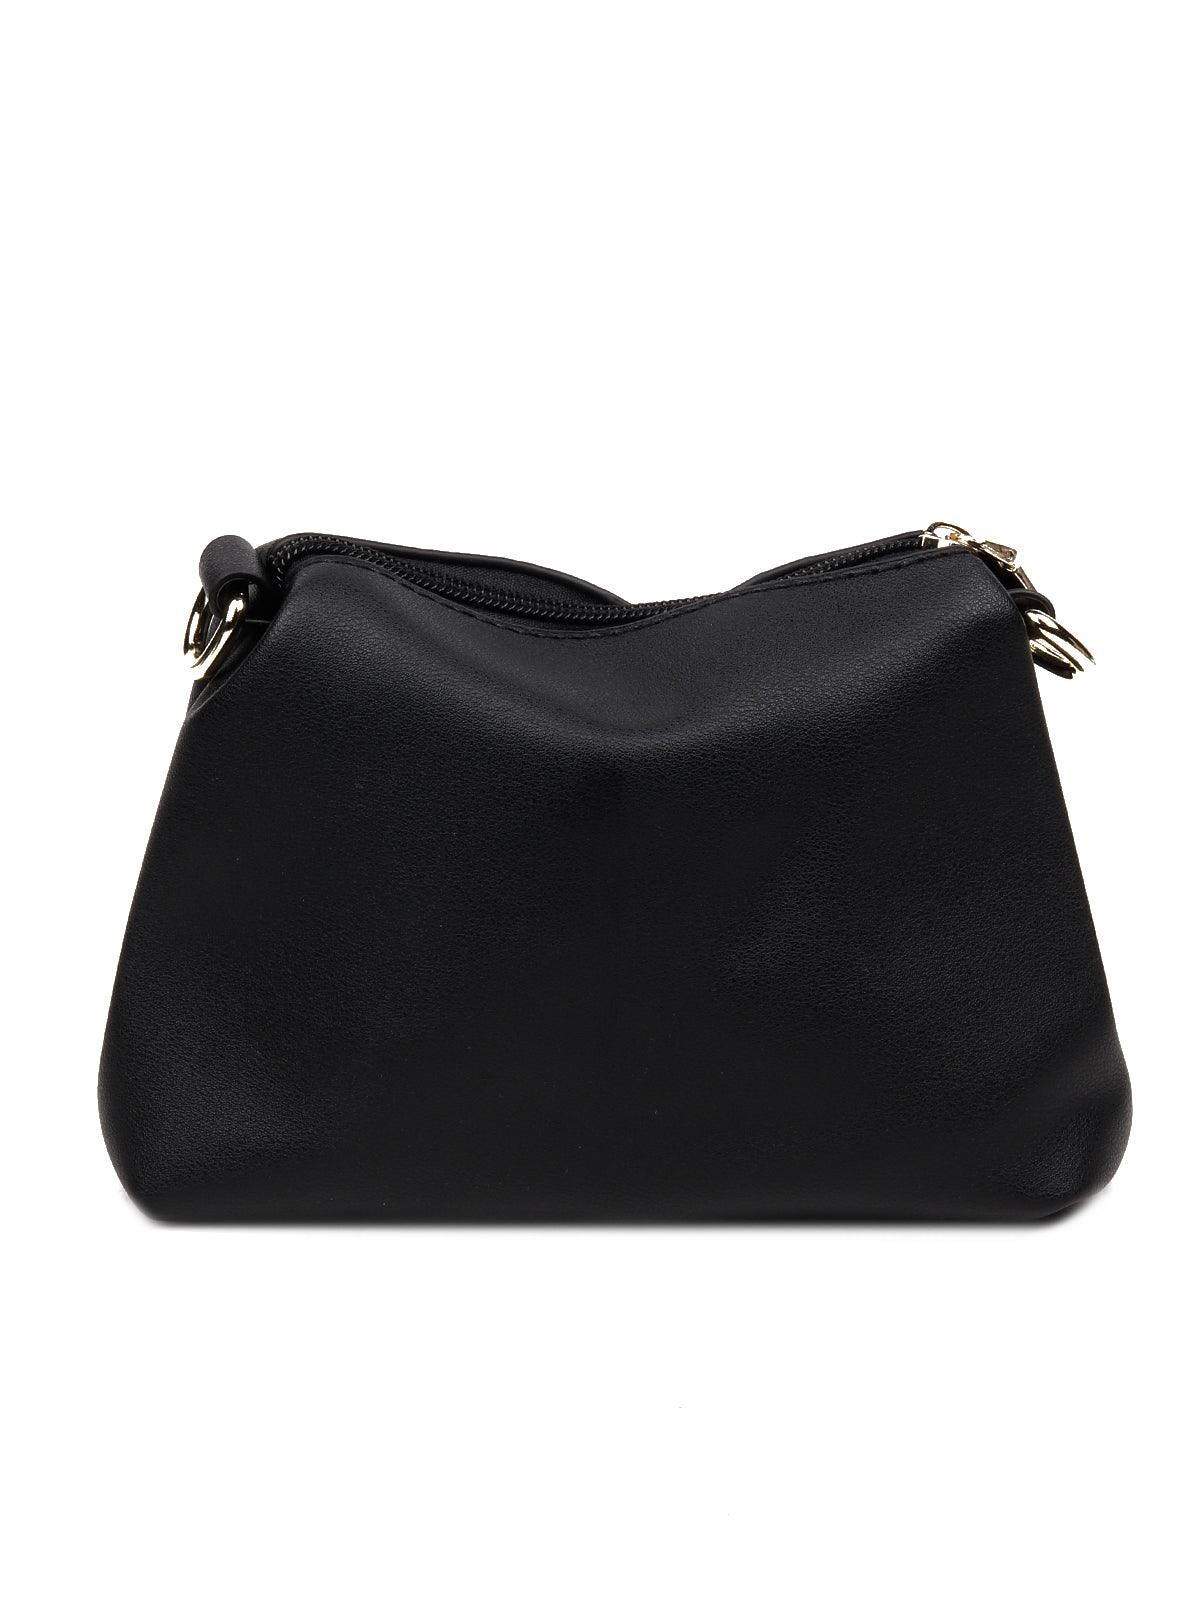 Classic Black satchel bag with a detachable pouch - Odette